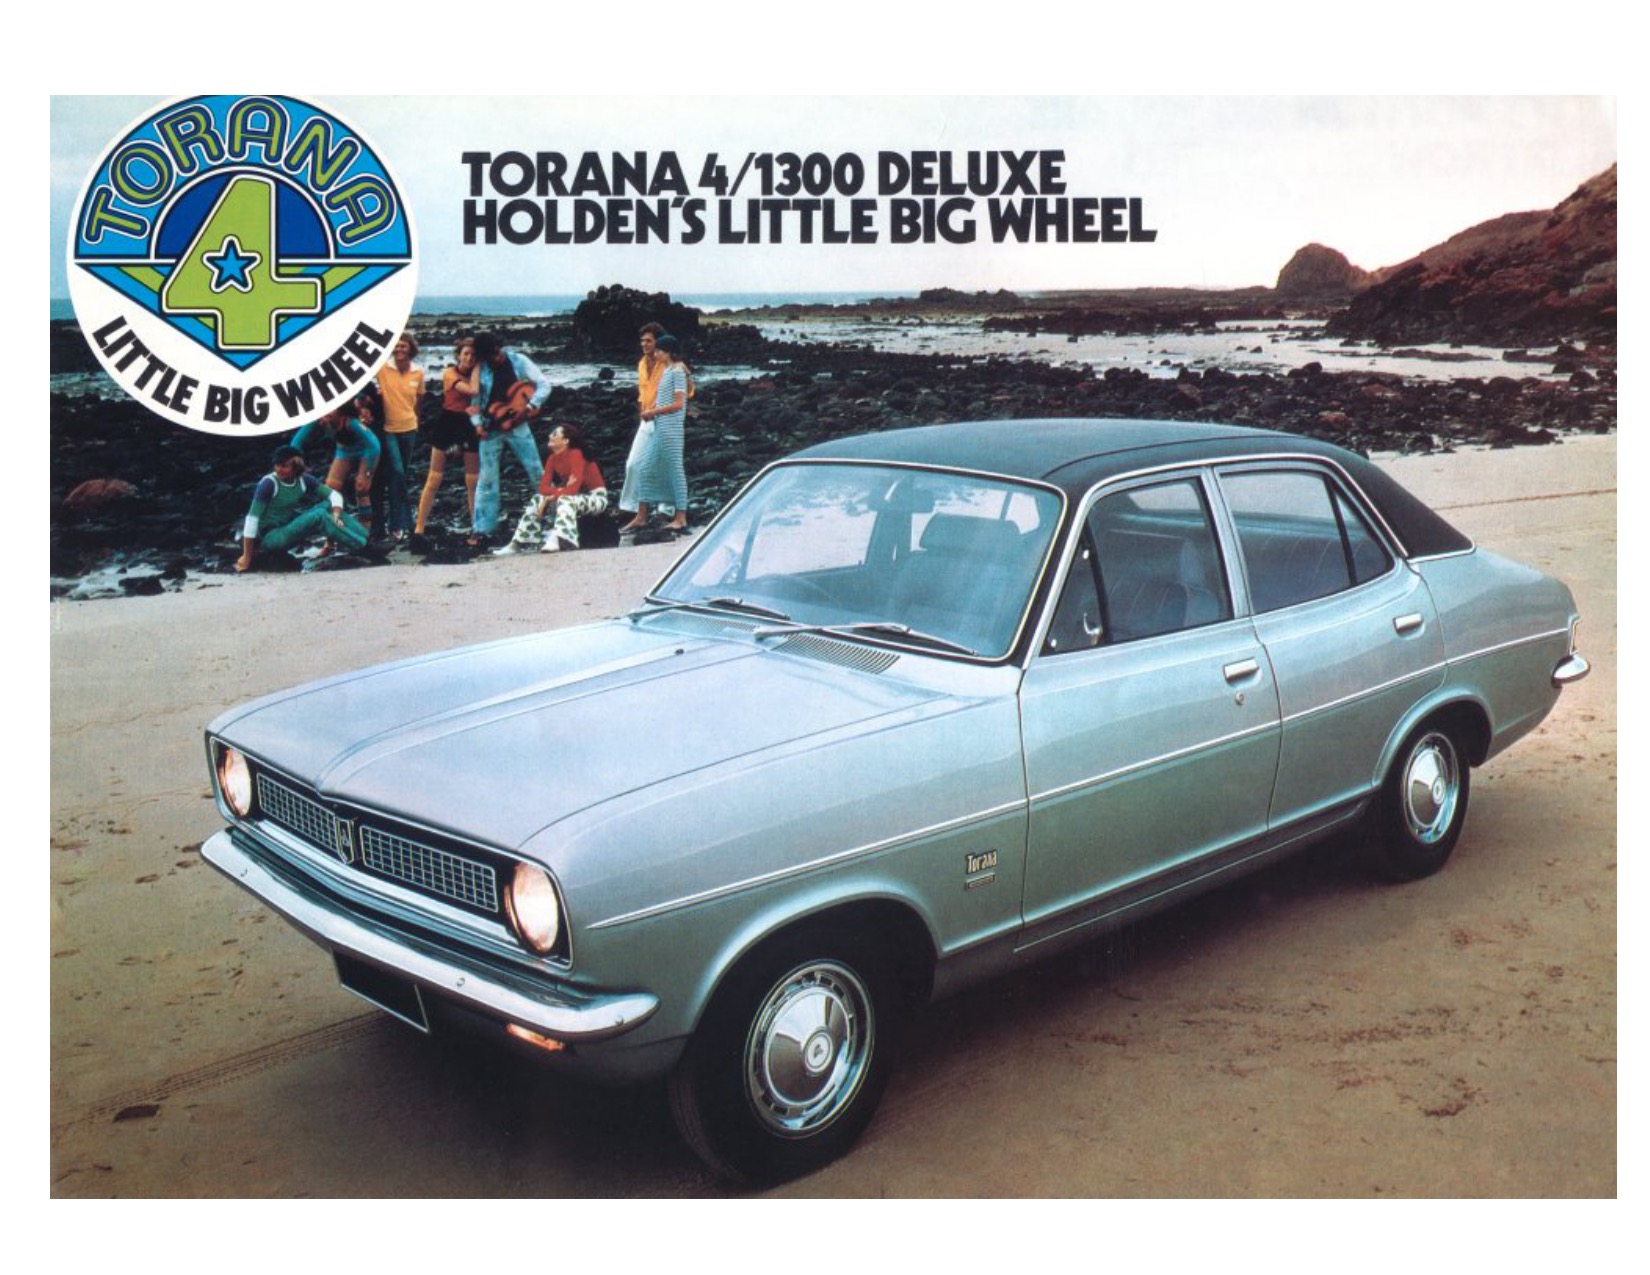 1972 Holden Torana LJ 1300 DeLuxe Brochure Page 2